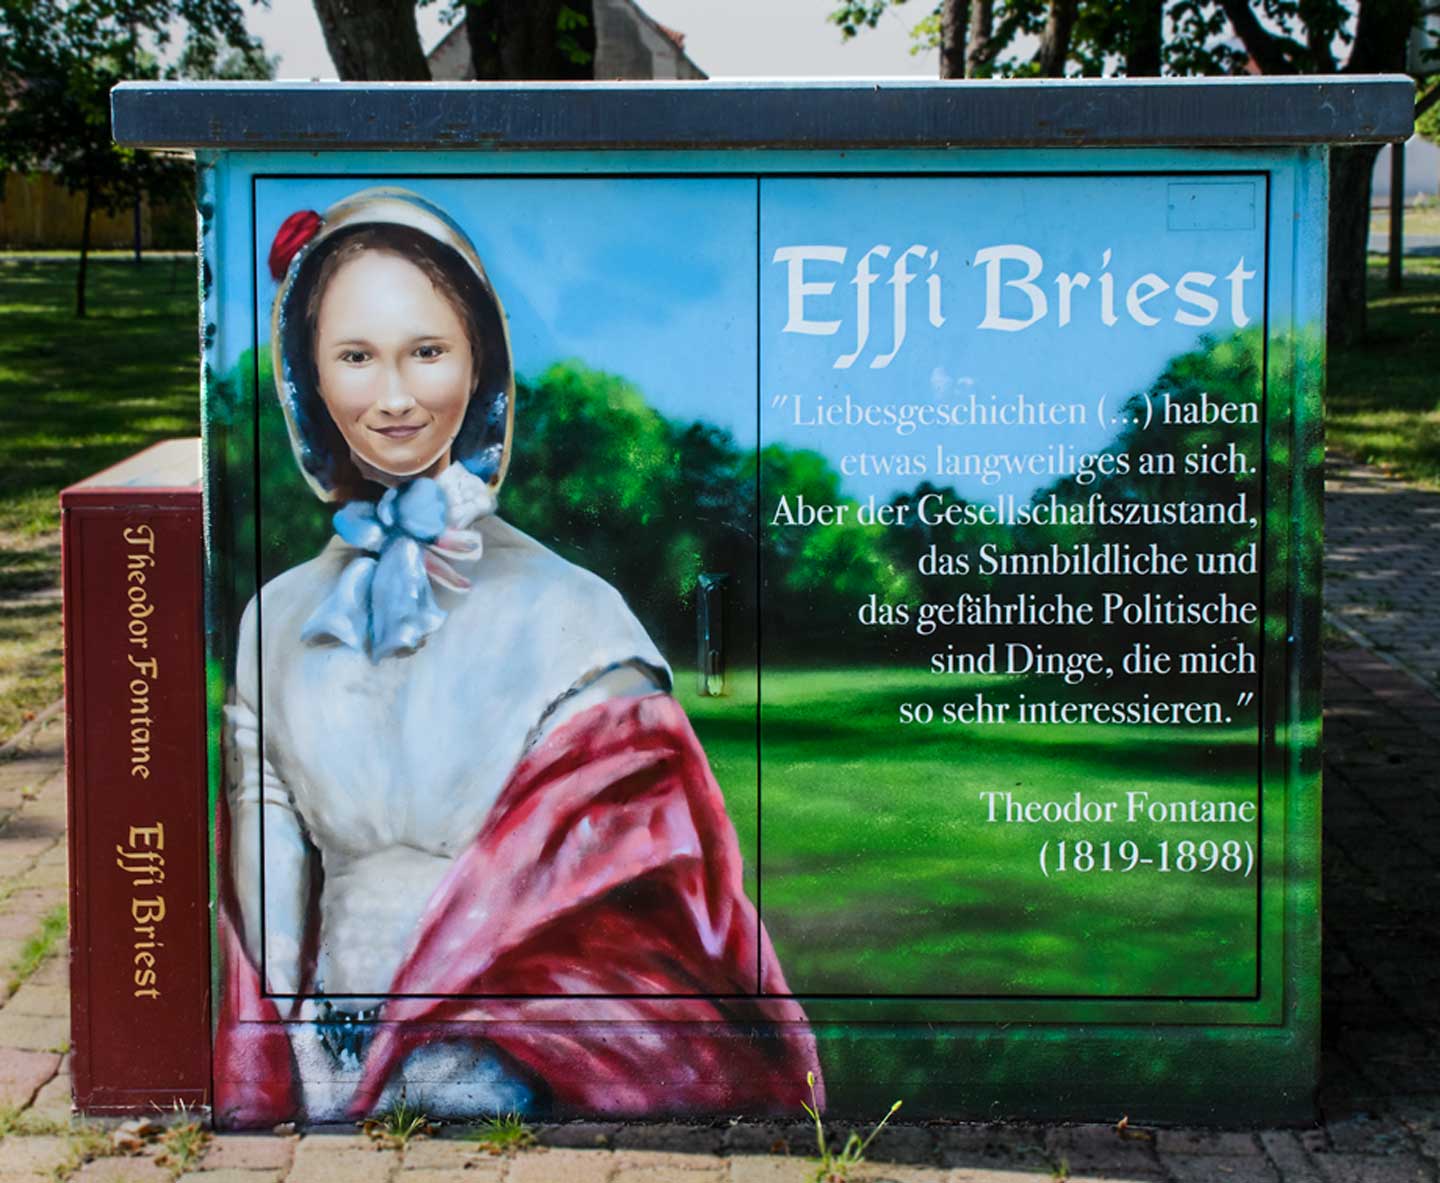 Fontanes Spuren im Heute: Effi Briest - eine ungewöhnlichen Frau